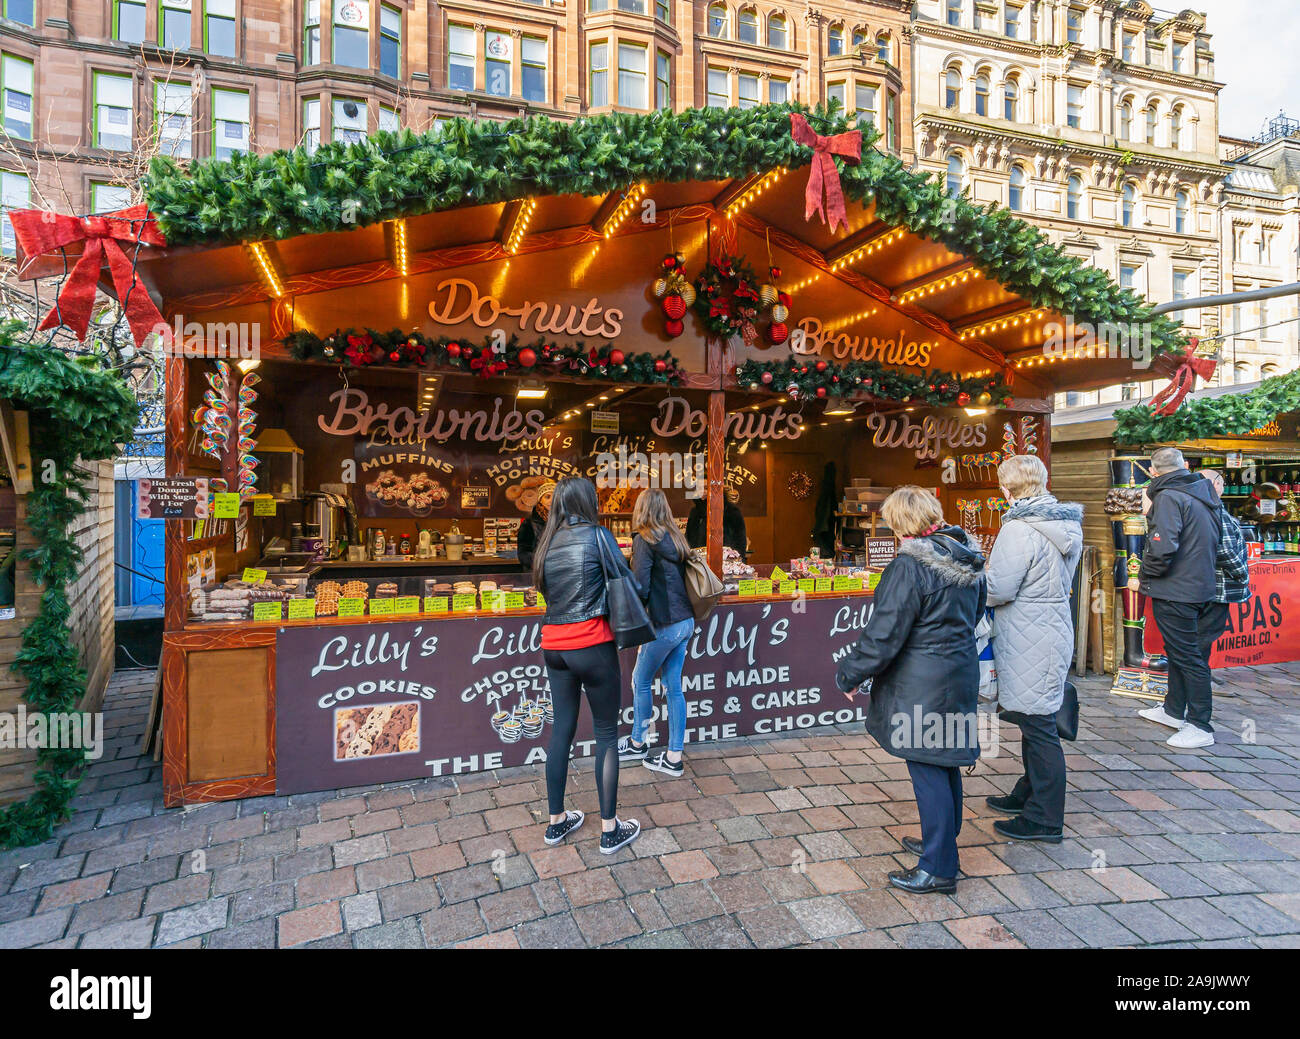 Glasgow Mercatino di Natale 2019 in St Enoch Square Glasgow Scozia con Lilly allo stand Foto Stock